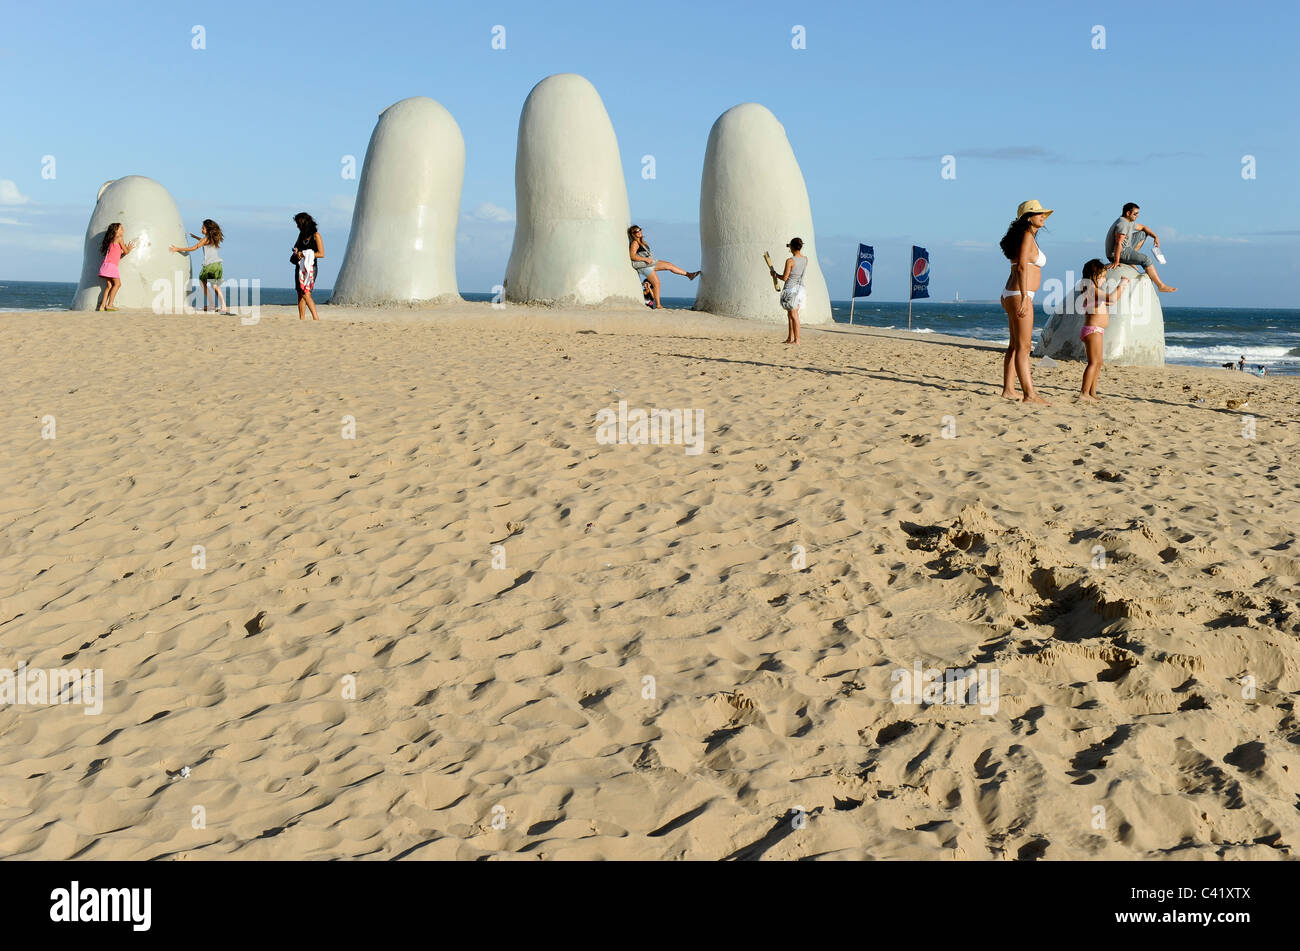 Punta del Este, Uruguay, la escultura "Los dedos" los dedos de una mano en la playa. Foto de stock